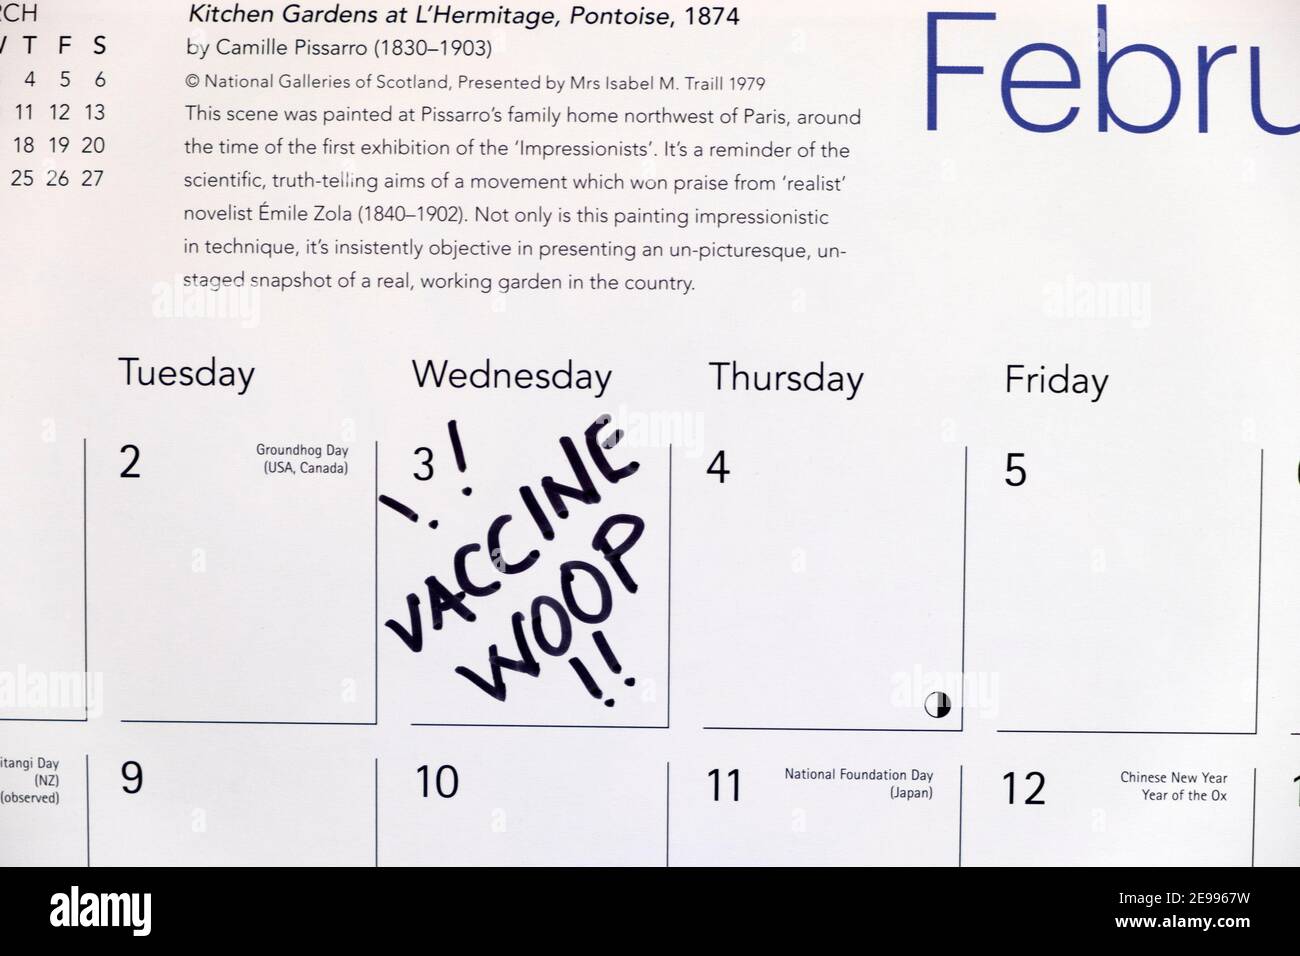 J'ai reçu la date de mon vaccin contre le covid sur le calendrier 3 Février 2021 exprimer sa joie lors de la pandémie Covid 19 au pays de Galles Royaume-Uni Grande-Bretagne KATHY DEWITT Banque D'Images